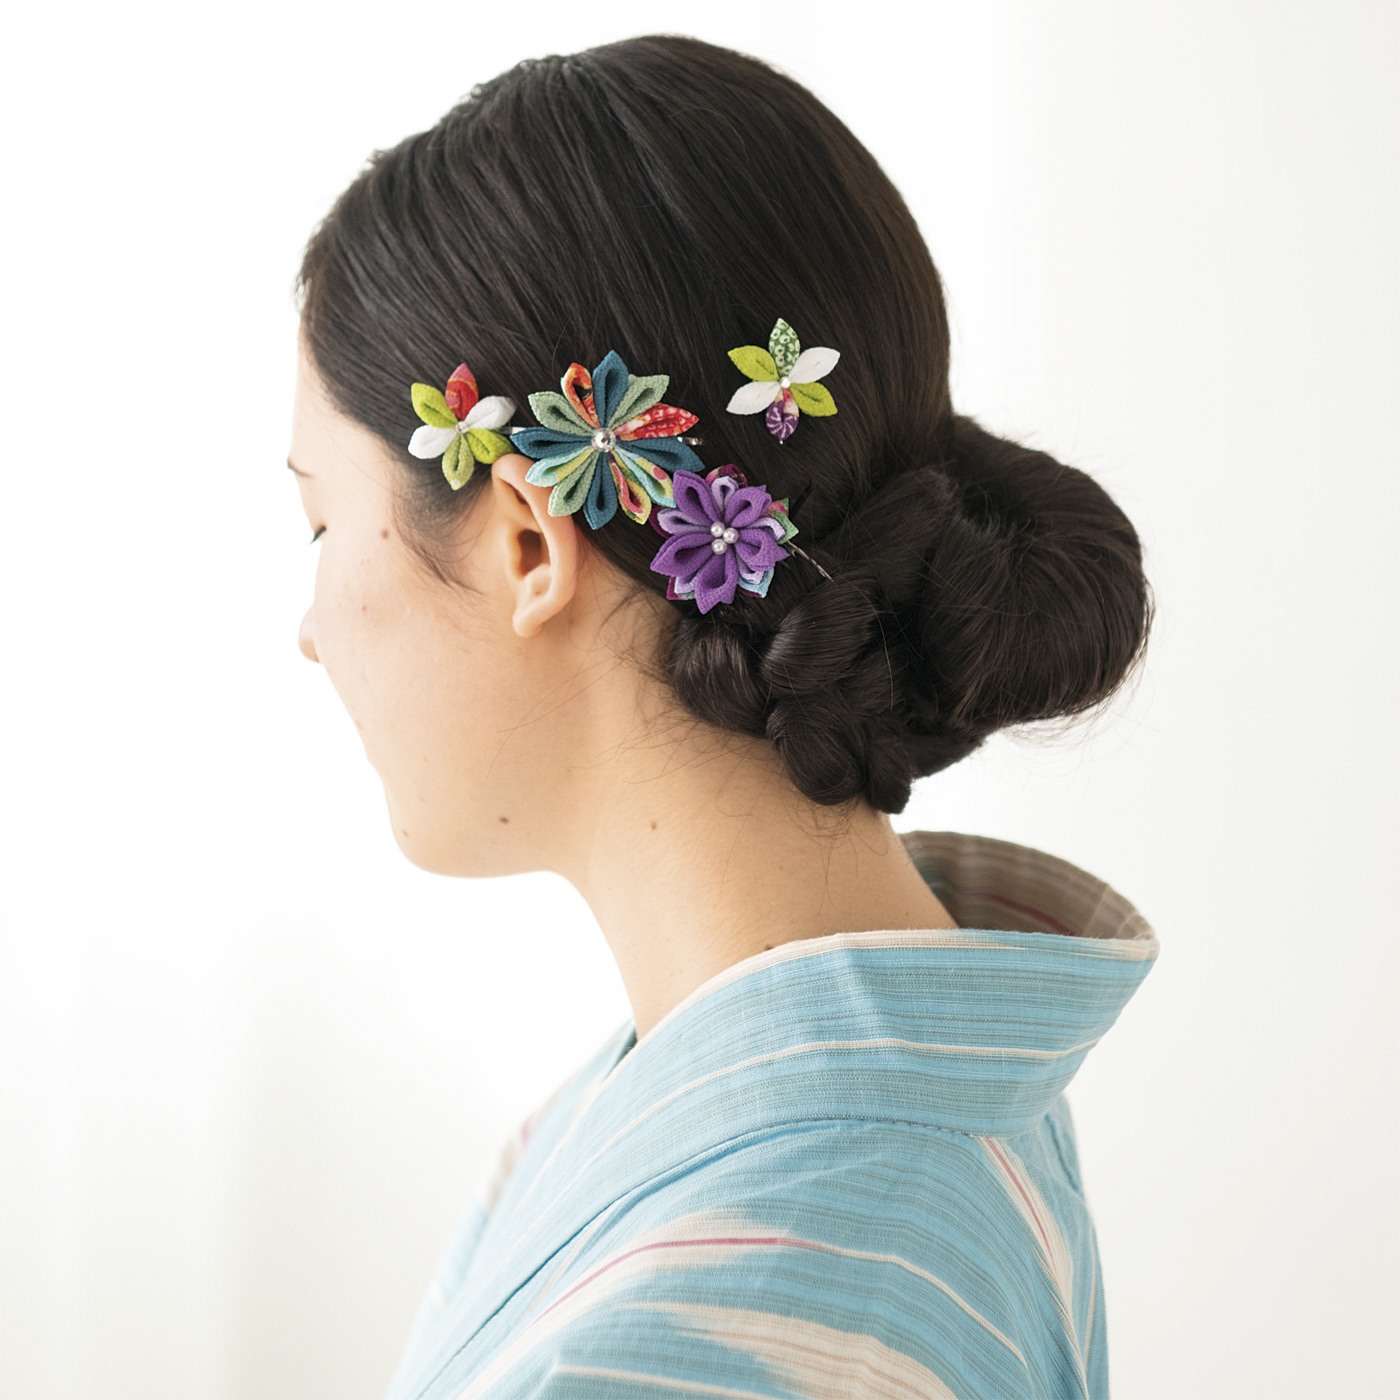 ハレの日の髪飾りにも♪日本の和の艶やかさが感じられる繊細なつまみ細工を手作りで - クチュリエブログ